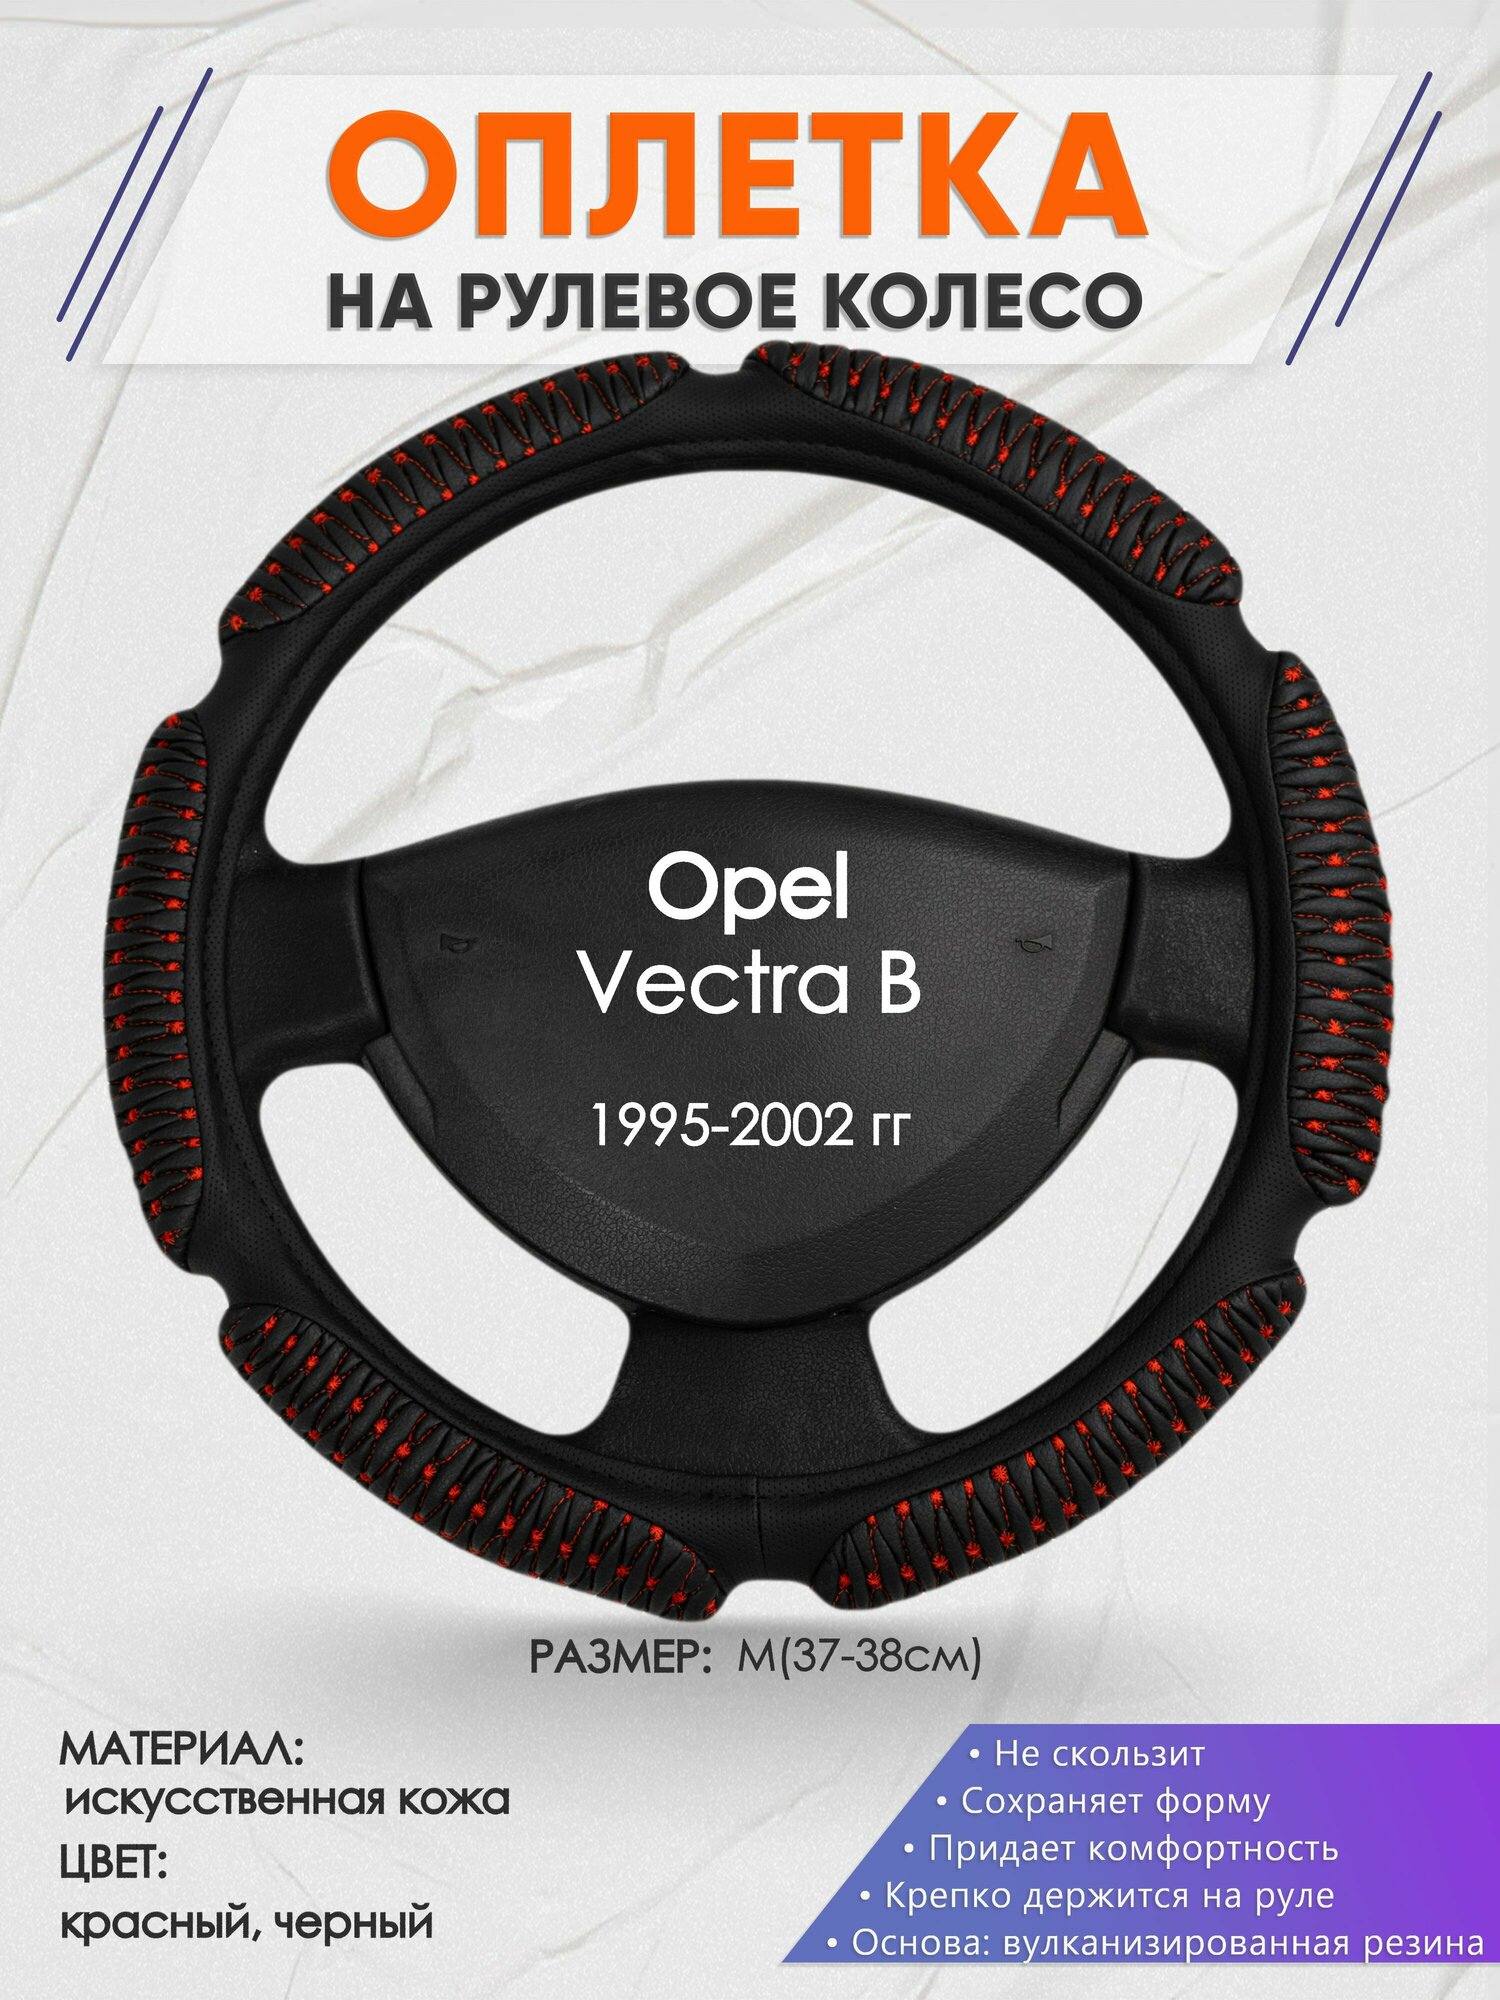 Оплетка на руль для Opel Vectra B(Опель Вектра Б) 1995-2002, M(37-38см), Искусственная кожа 01